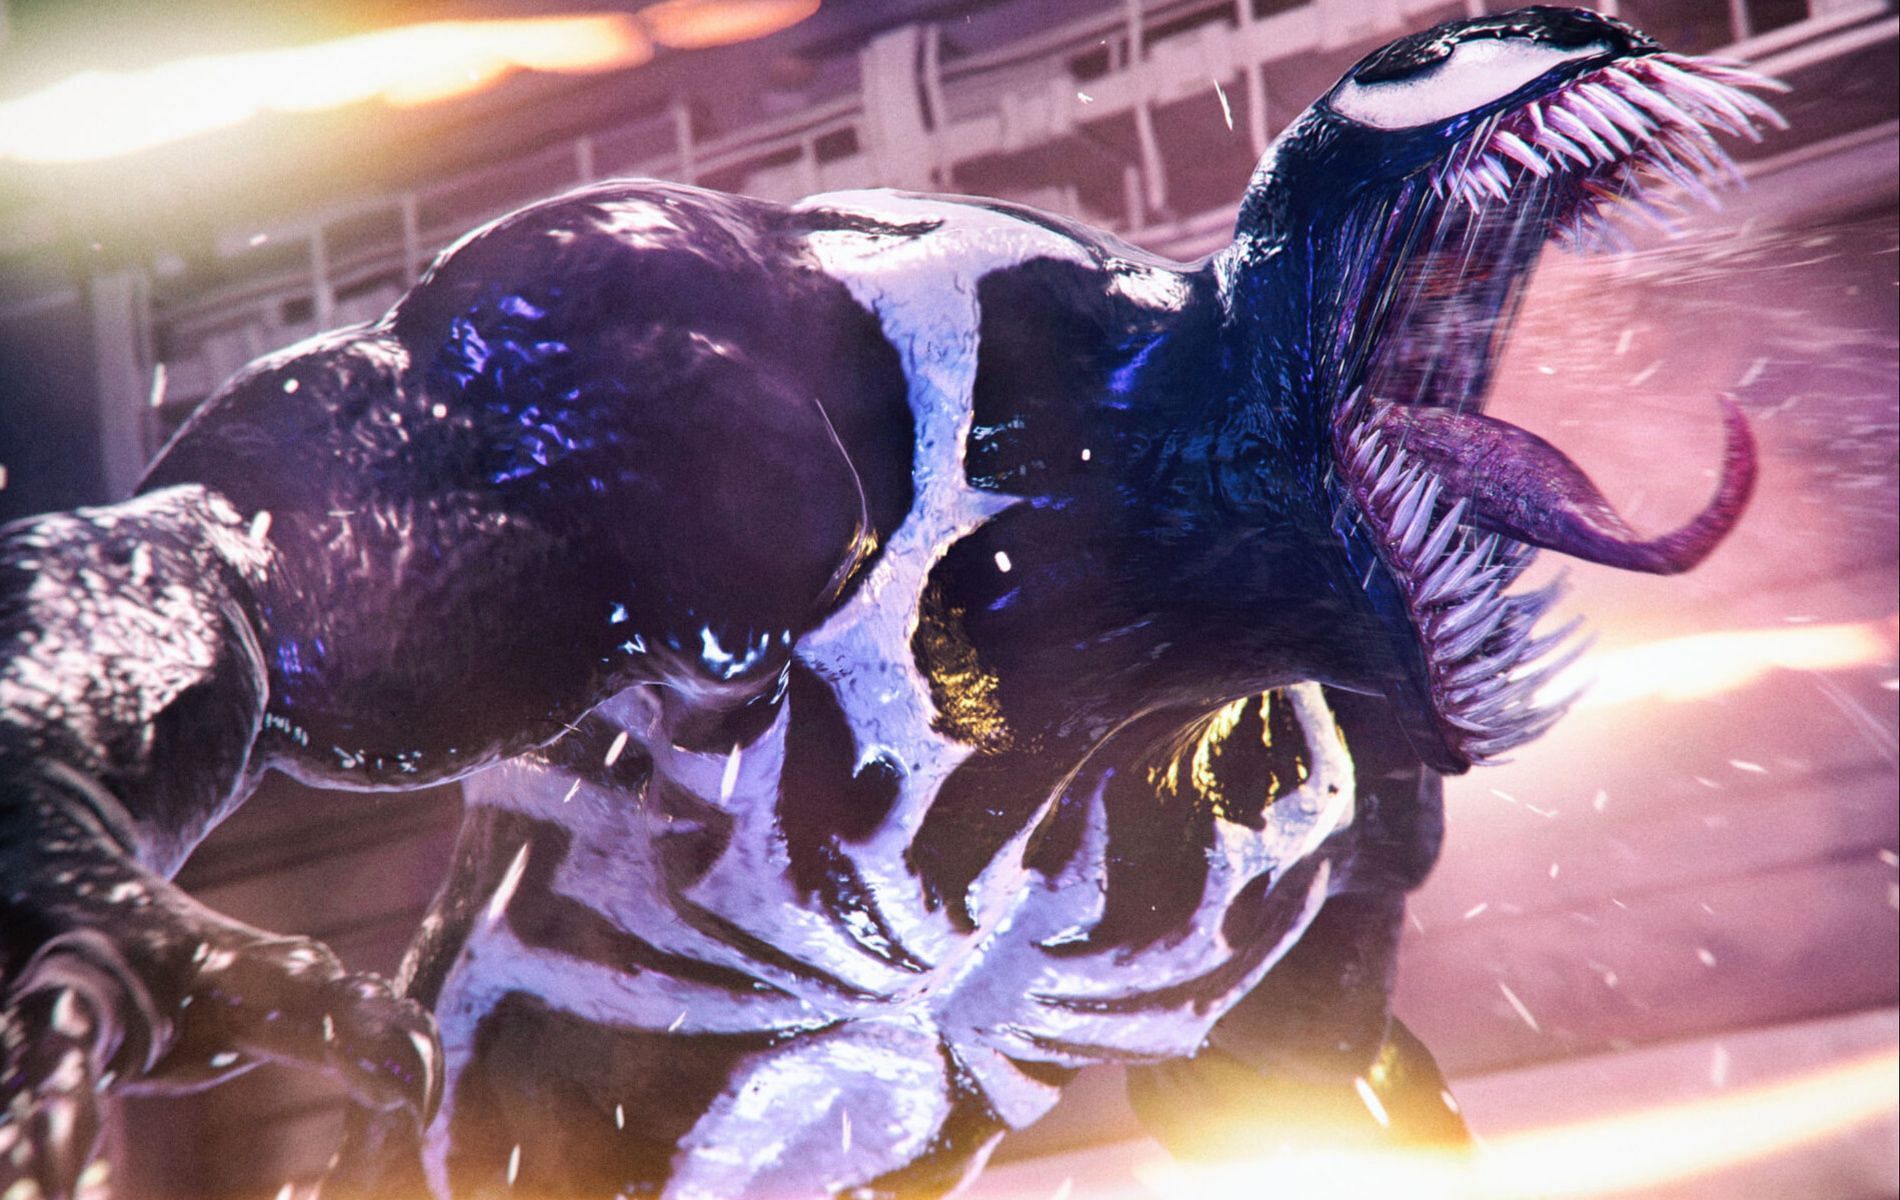 Official Venom cover art for Marvel